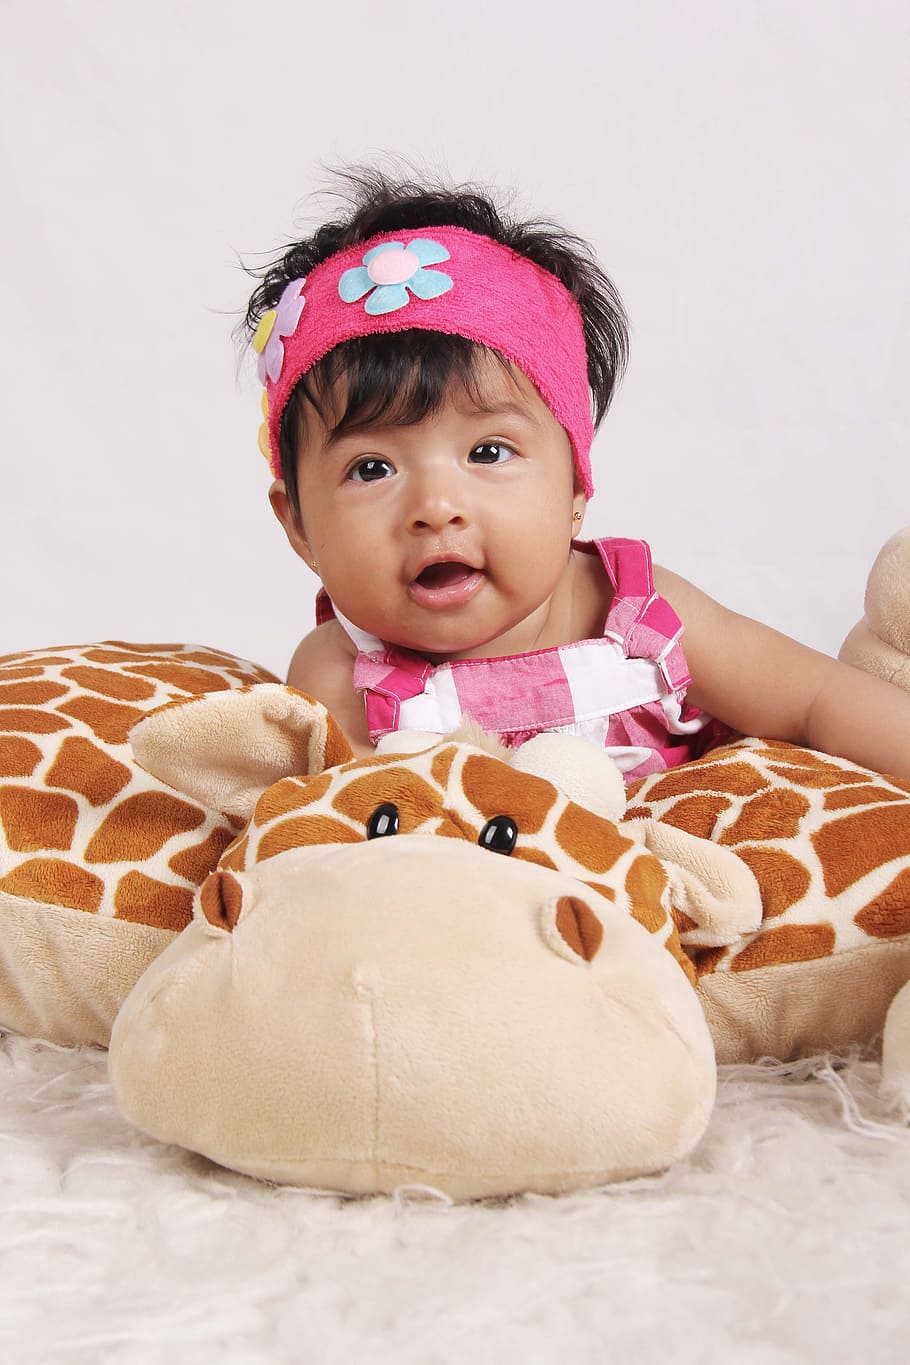 Bebe, jirafa, riendo, feliz, niño, lindo, infancia, personas, bebé, una persona